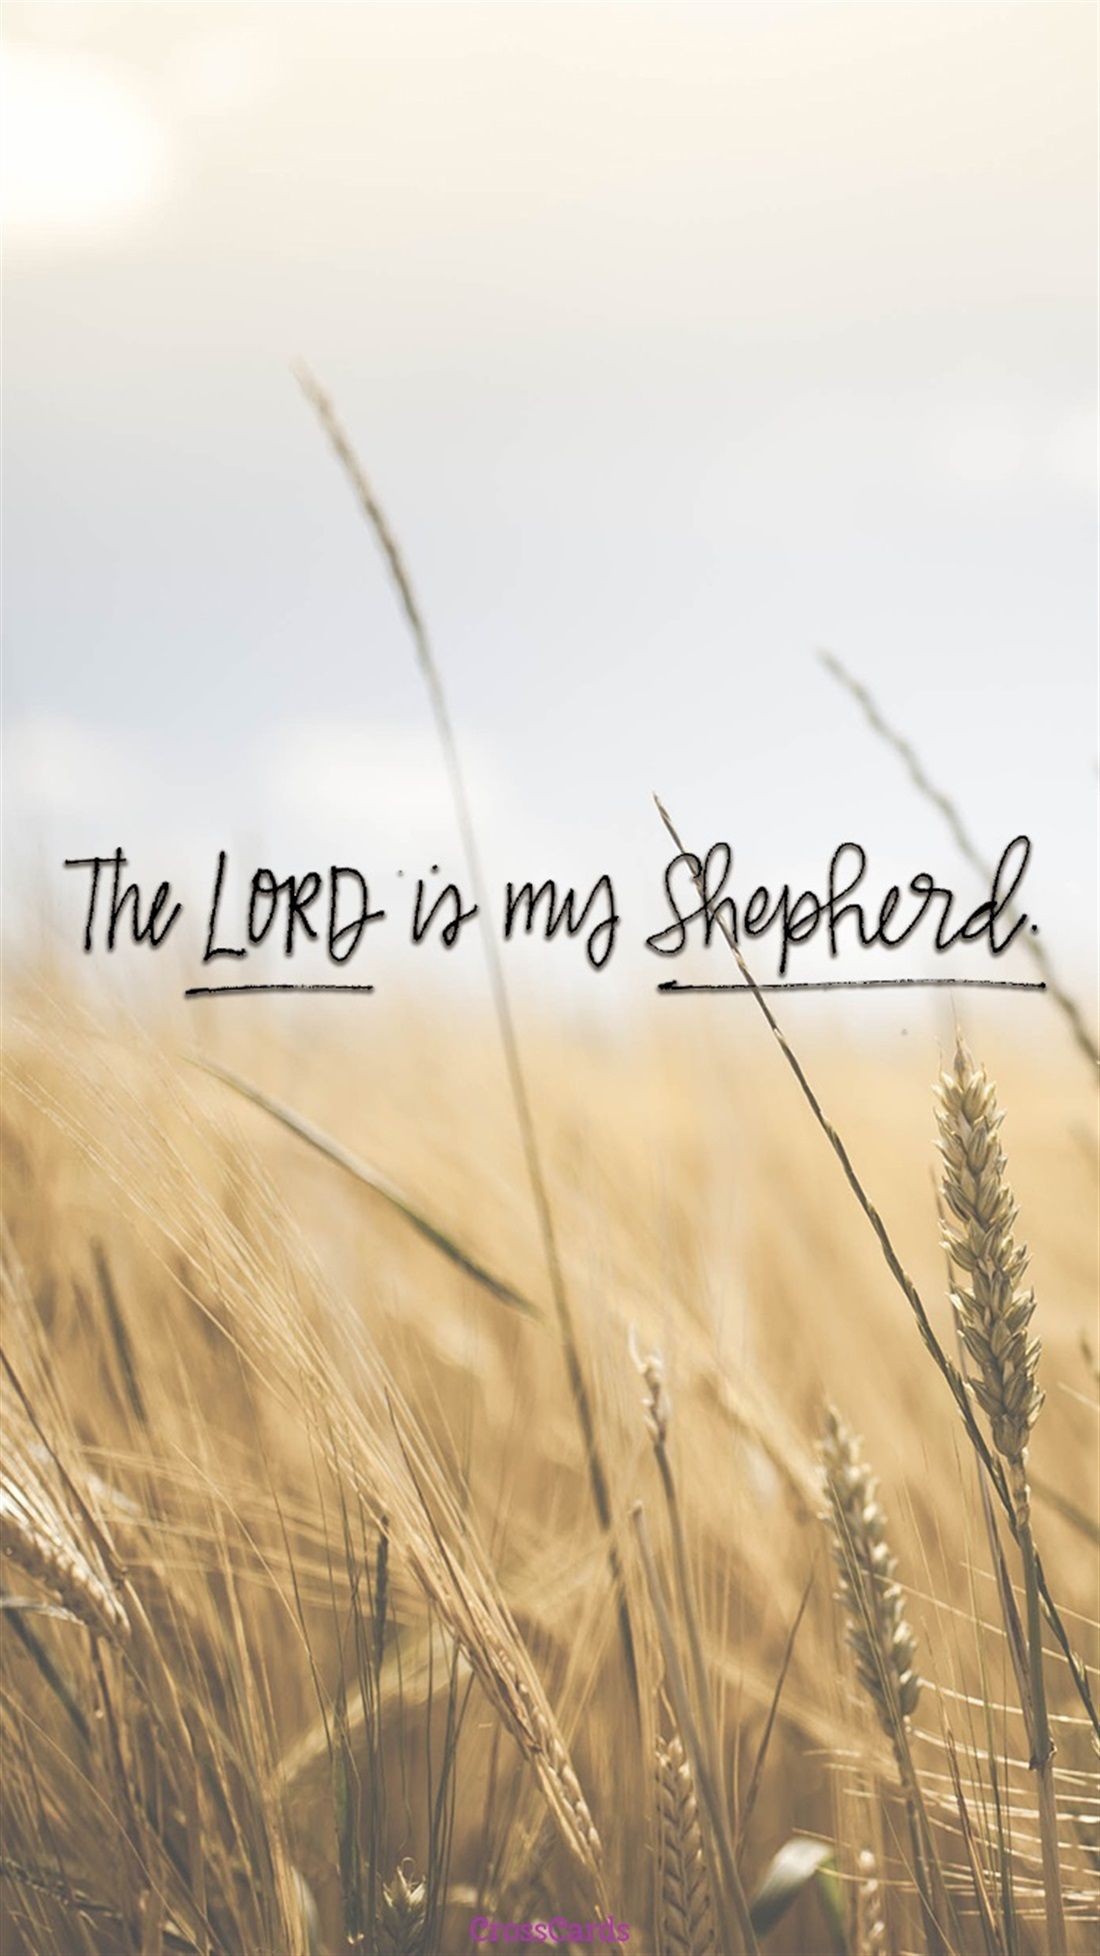 Free Phone Wallpaper Lord is My Shepherd #phonewallpaper. Lord is my shepherd, Free phone wallpaper, Phone wallpaper